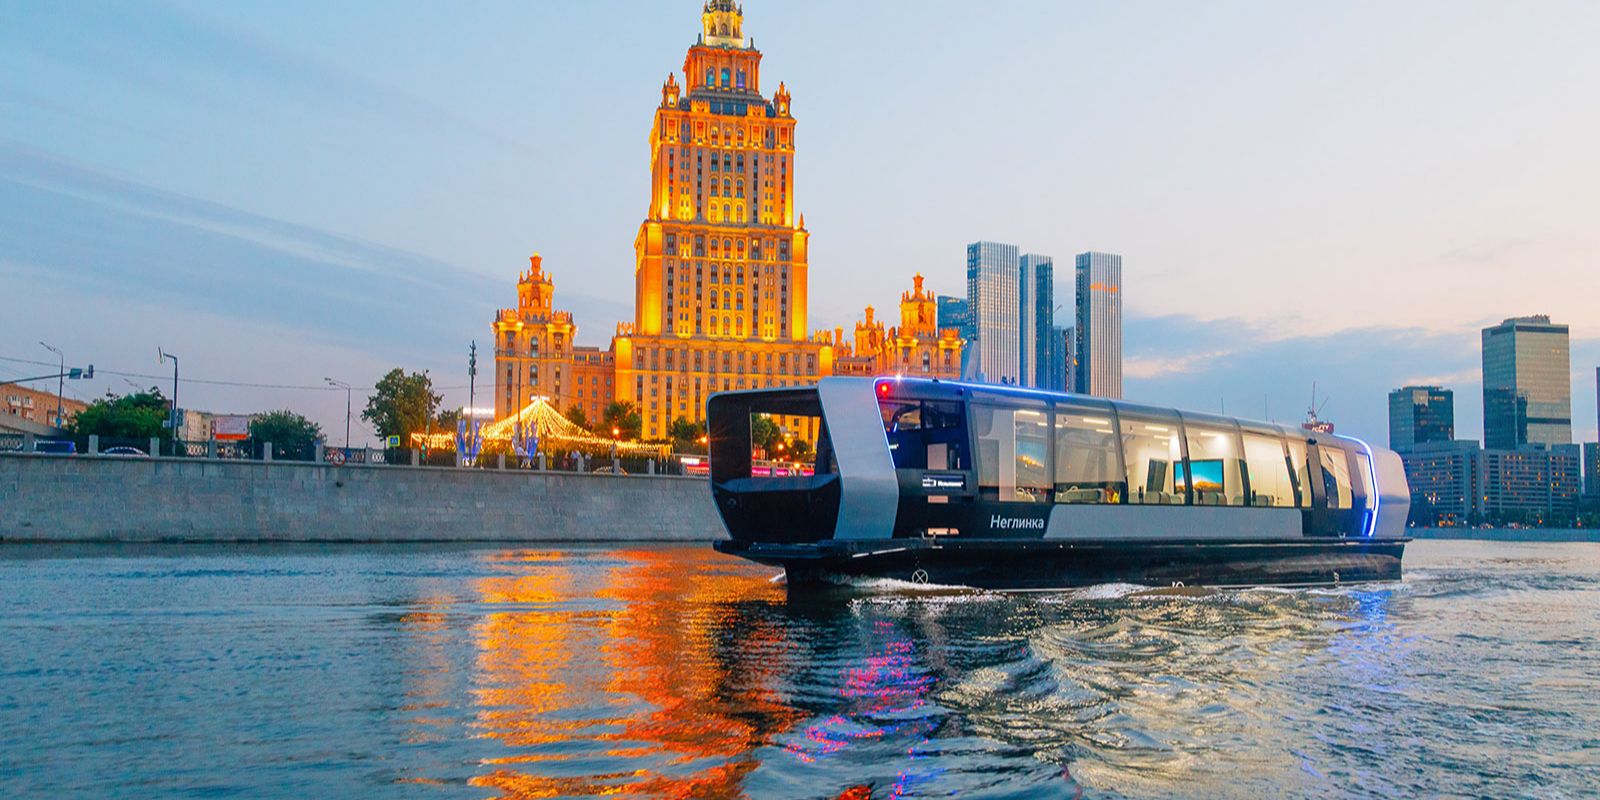 Умная мобильность в мегаполисе: что происходит в Москве с точки зрения современных транспортных концепций